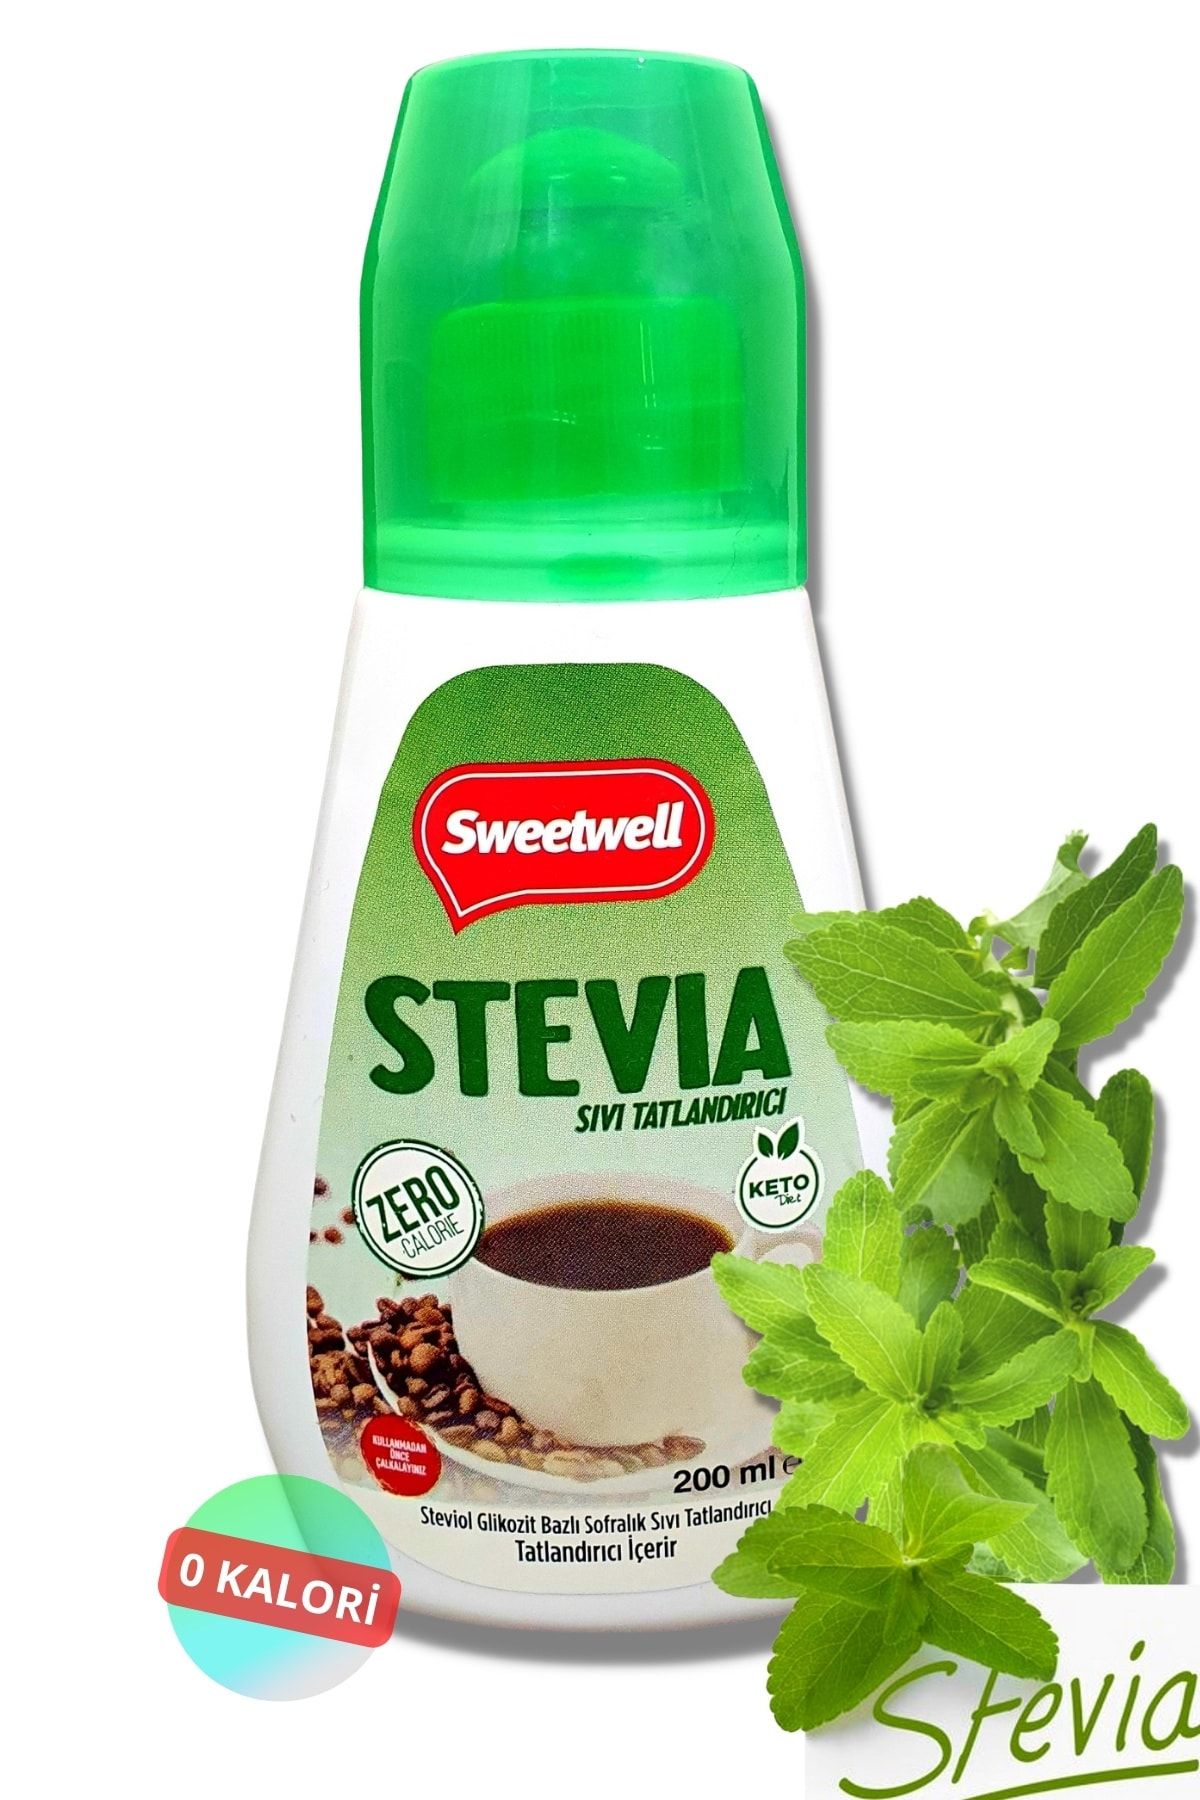 Sweetwell Stevia Sıvı Tatlandırıcı Sıfır Kalori 200 Ml